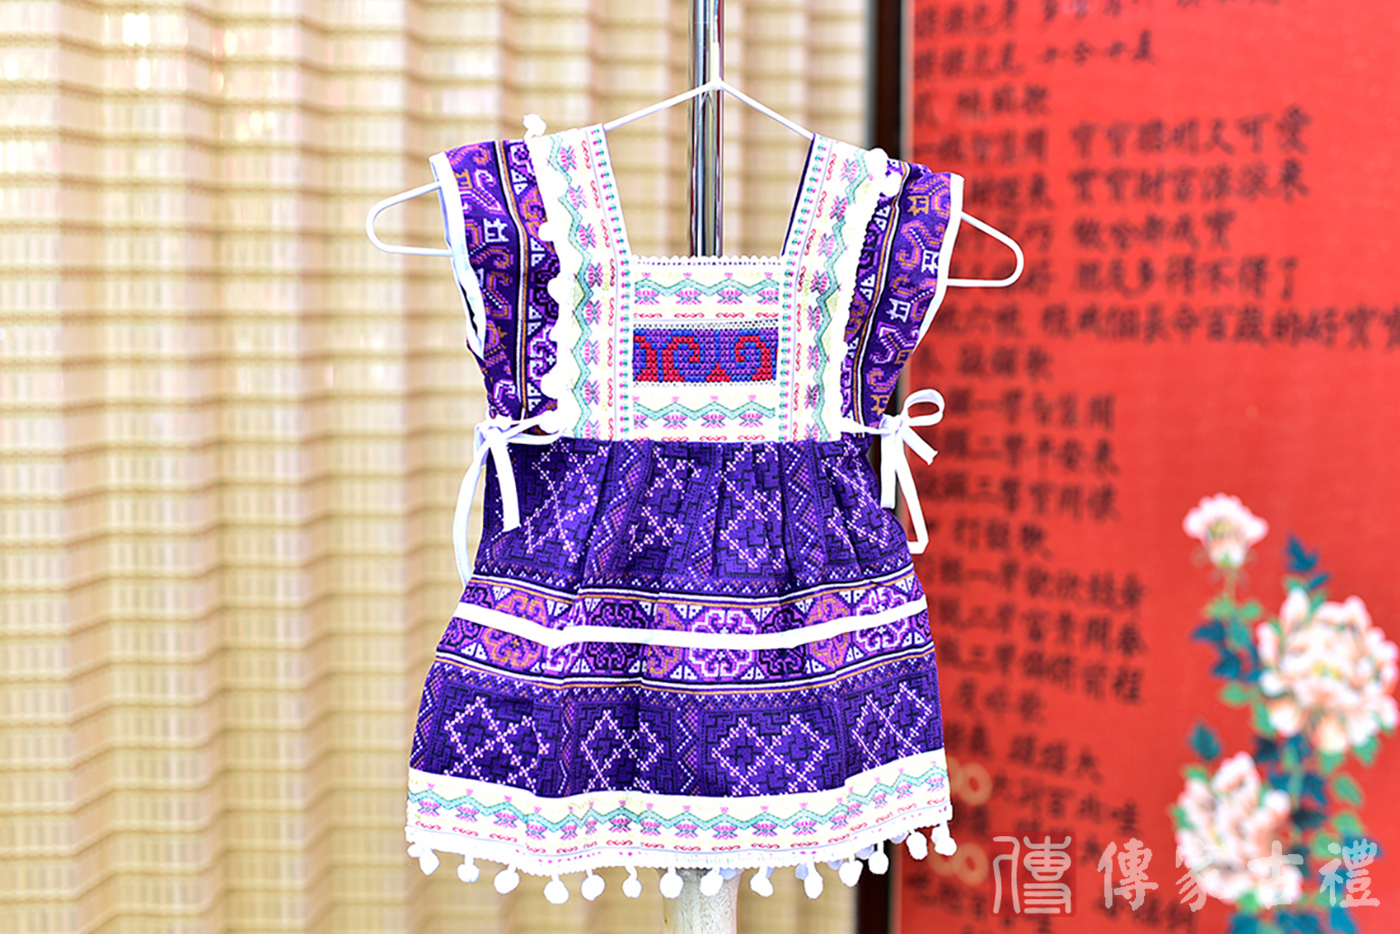 2024-02-25小孩傳統泰服古裝禮服。深邃紫羅蘭色的上衣搭配複雜圖騰裙裝的泰式古裝禮服。照片集